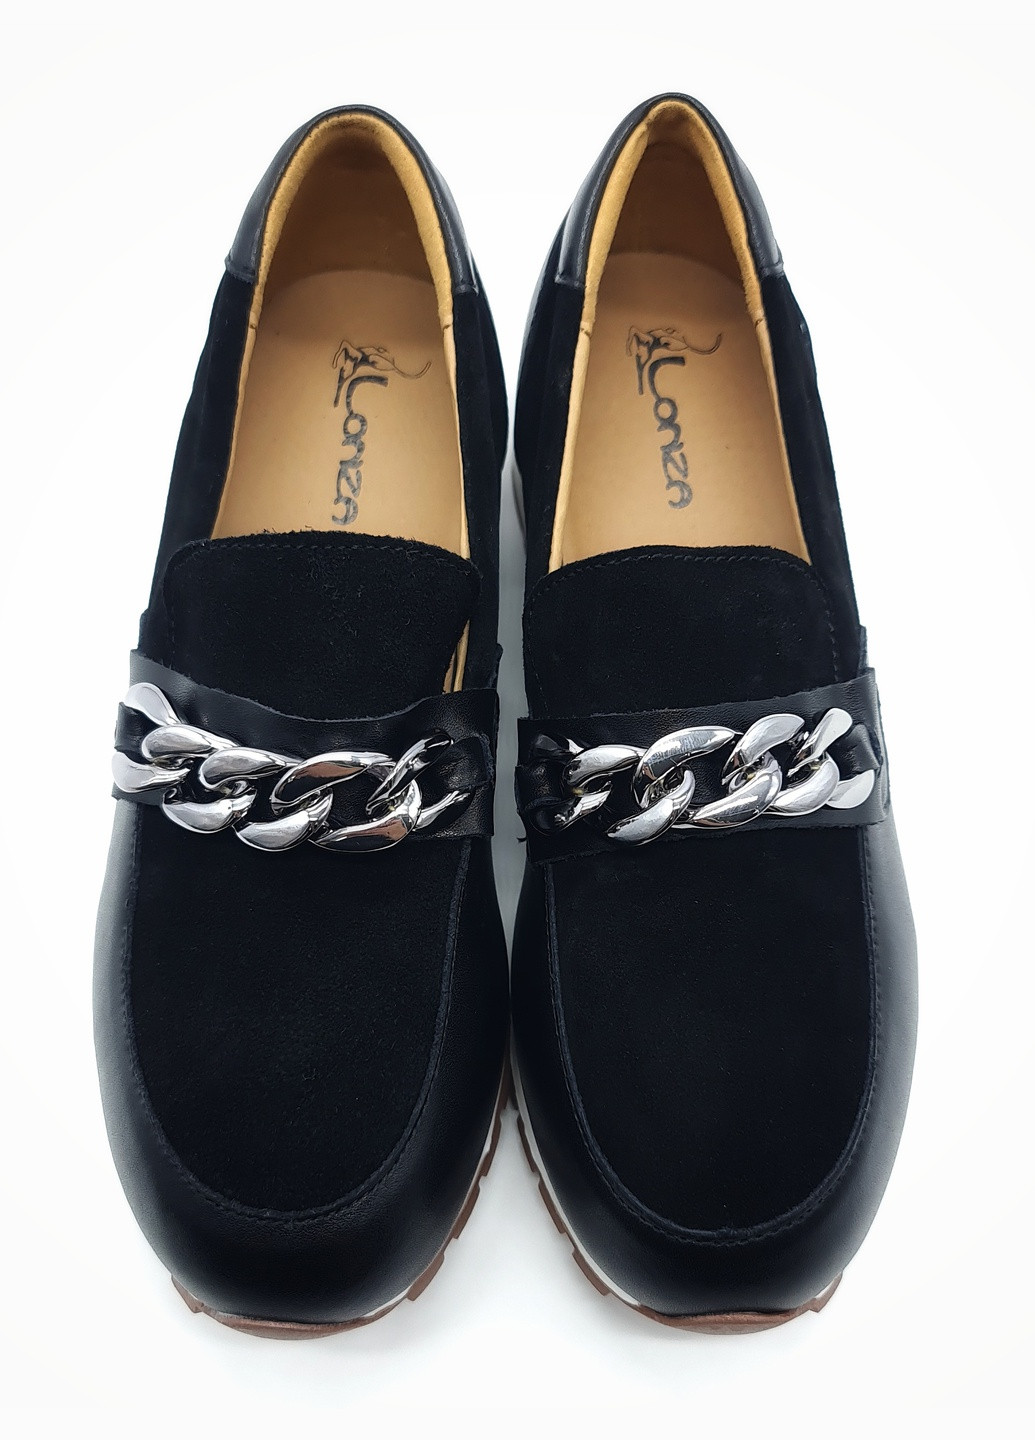 Женские туфли черные замшевые L-17-1 23,5 см (р) Lonza